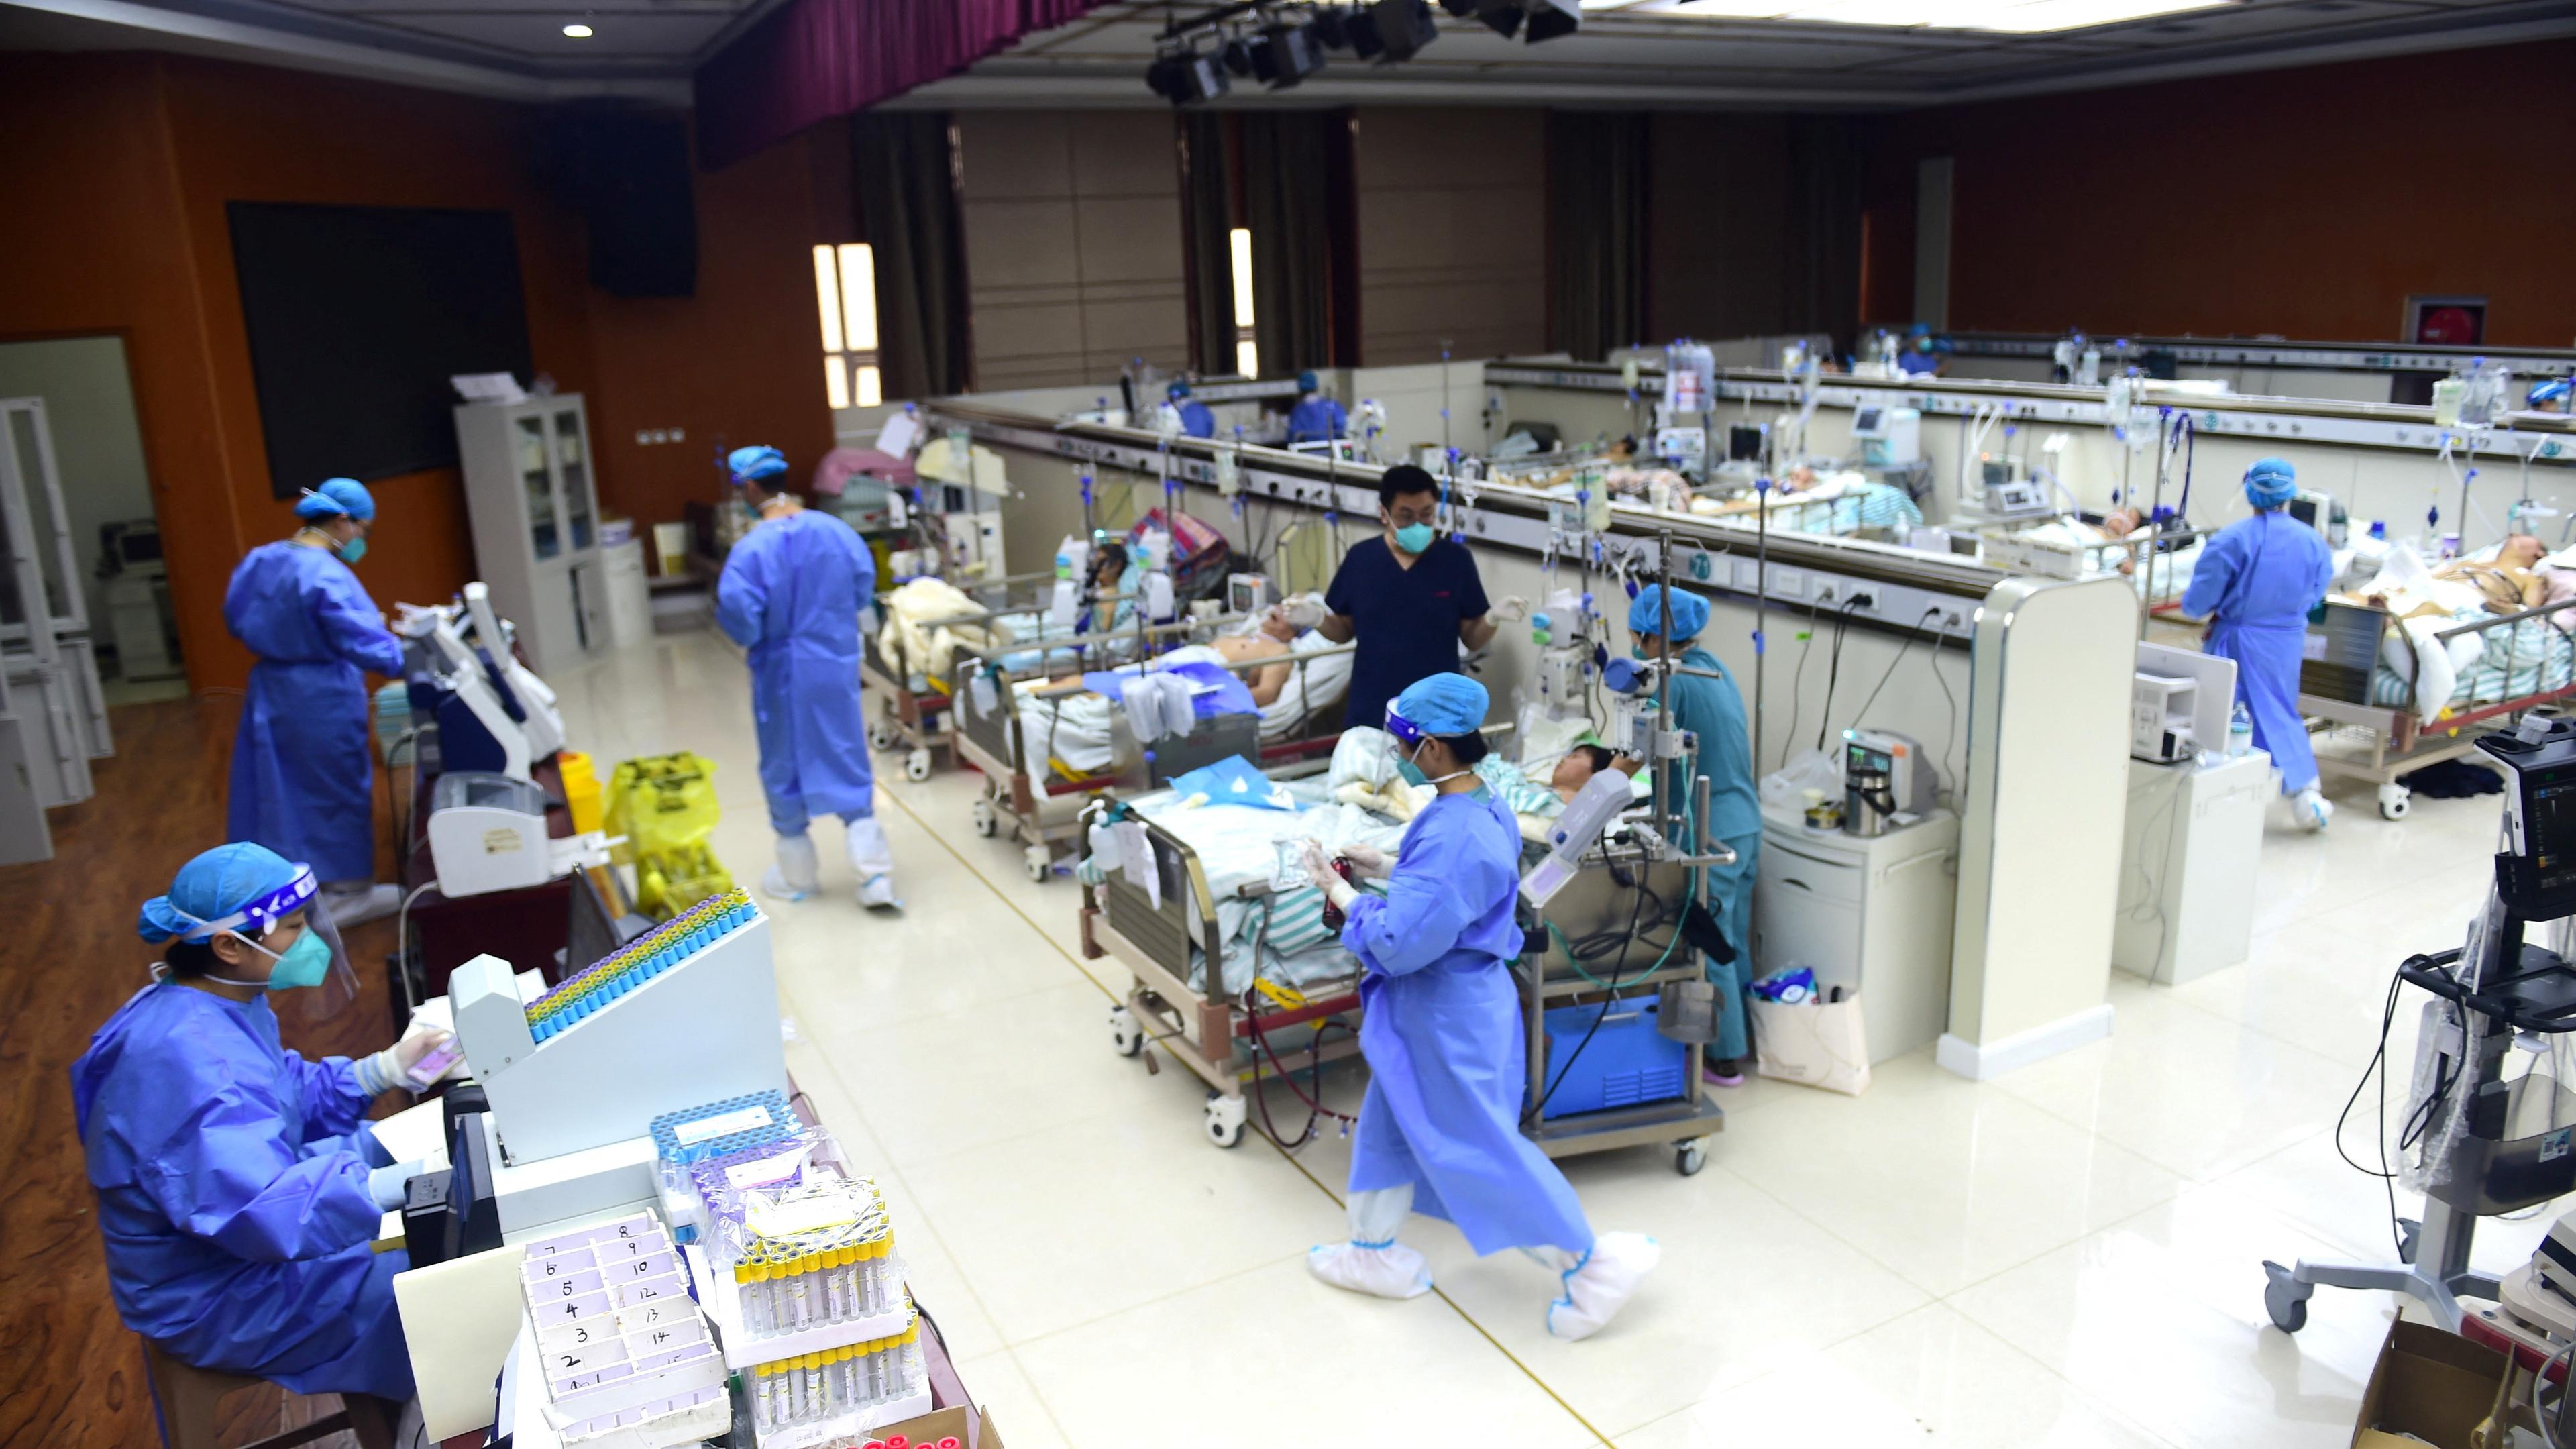 China, Cangzhou: Intensivstation eines improvisierten Hospitals im ehemaligen Konferenzraum.